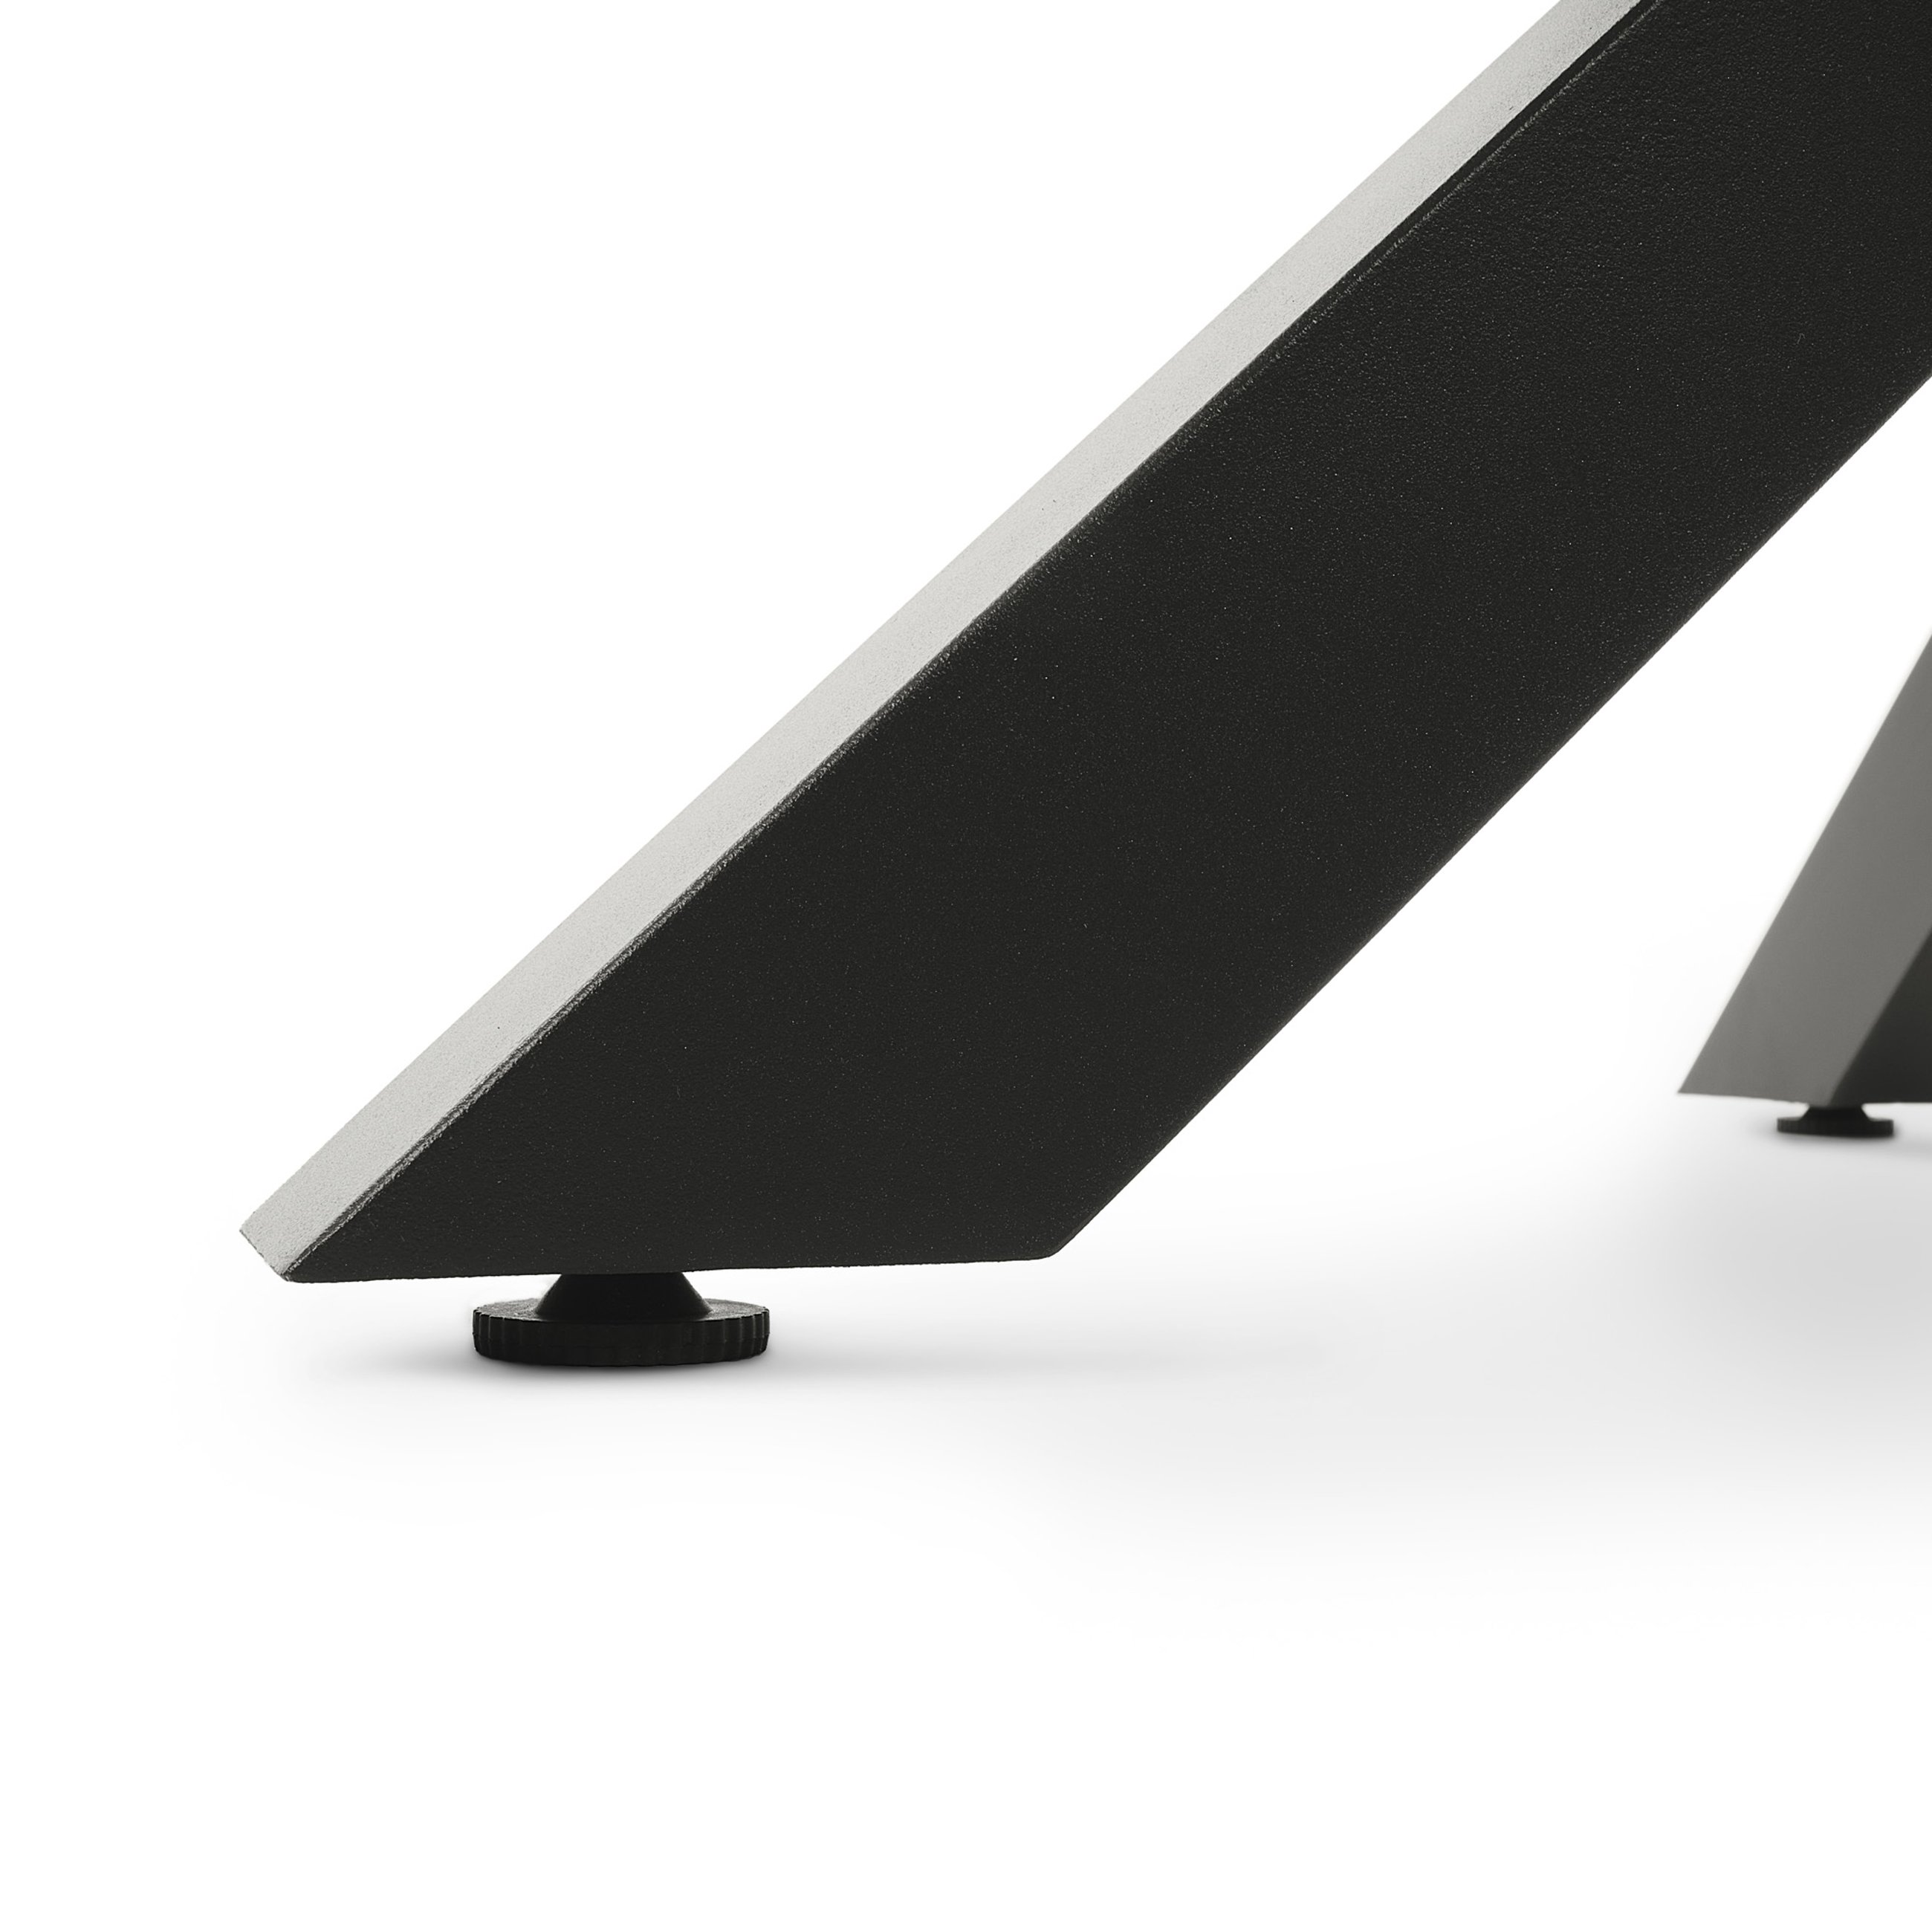 Nogi stołu Ravello wyposażone zostały w funkcjonalne stopki, umożliwiające drobną regulację jego wysokości